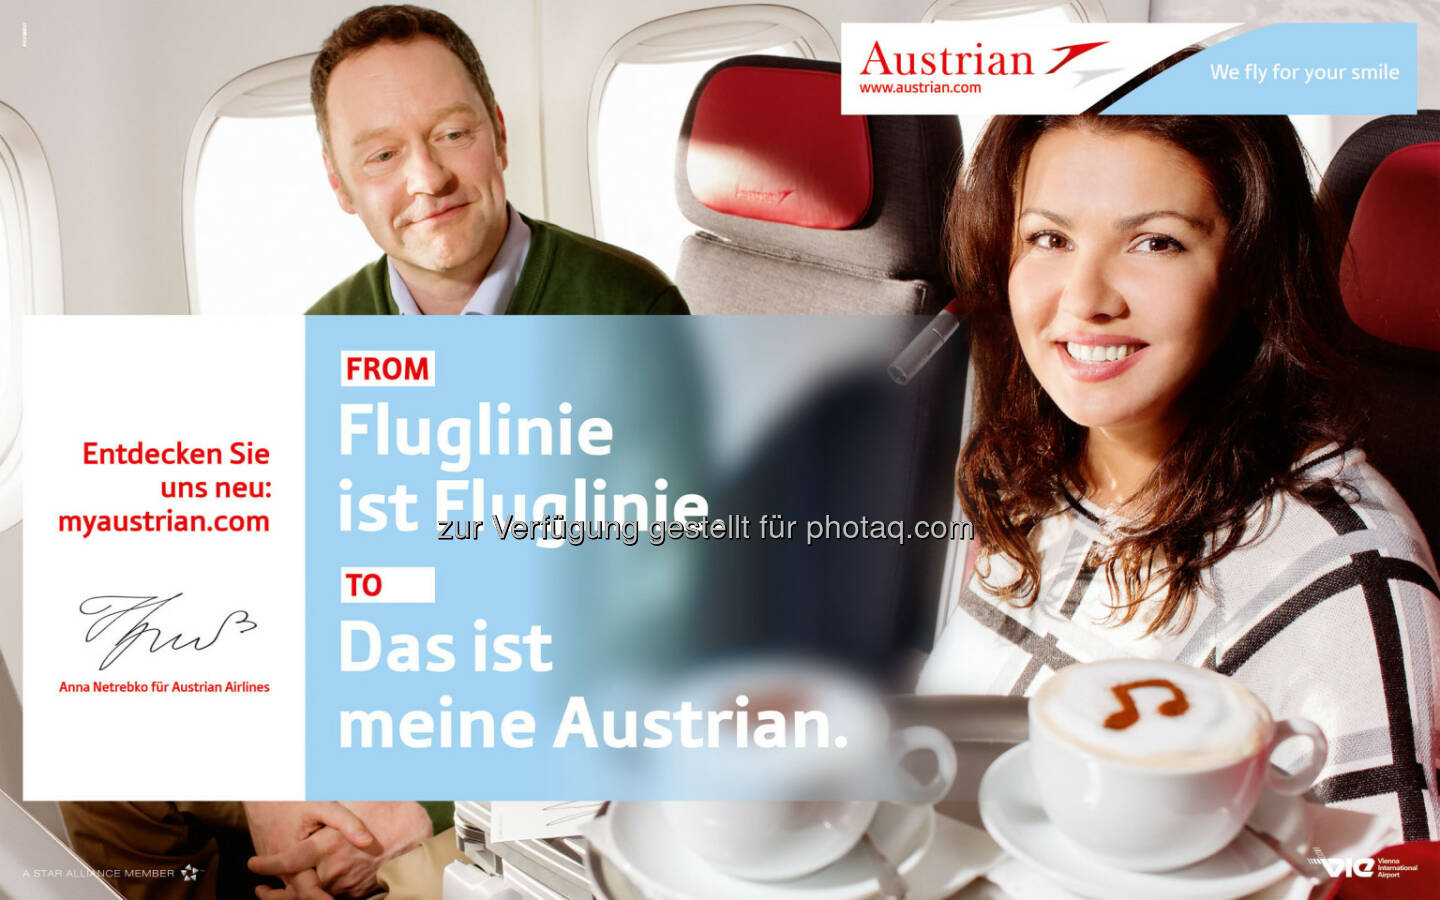 Anna Netrebko neues Austrian Airlines Werbegesicht